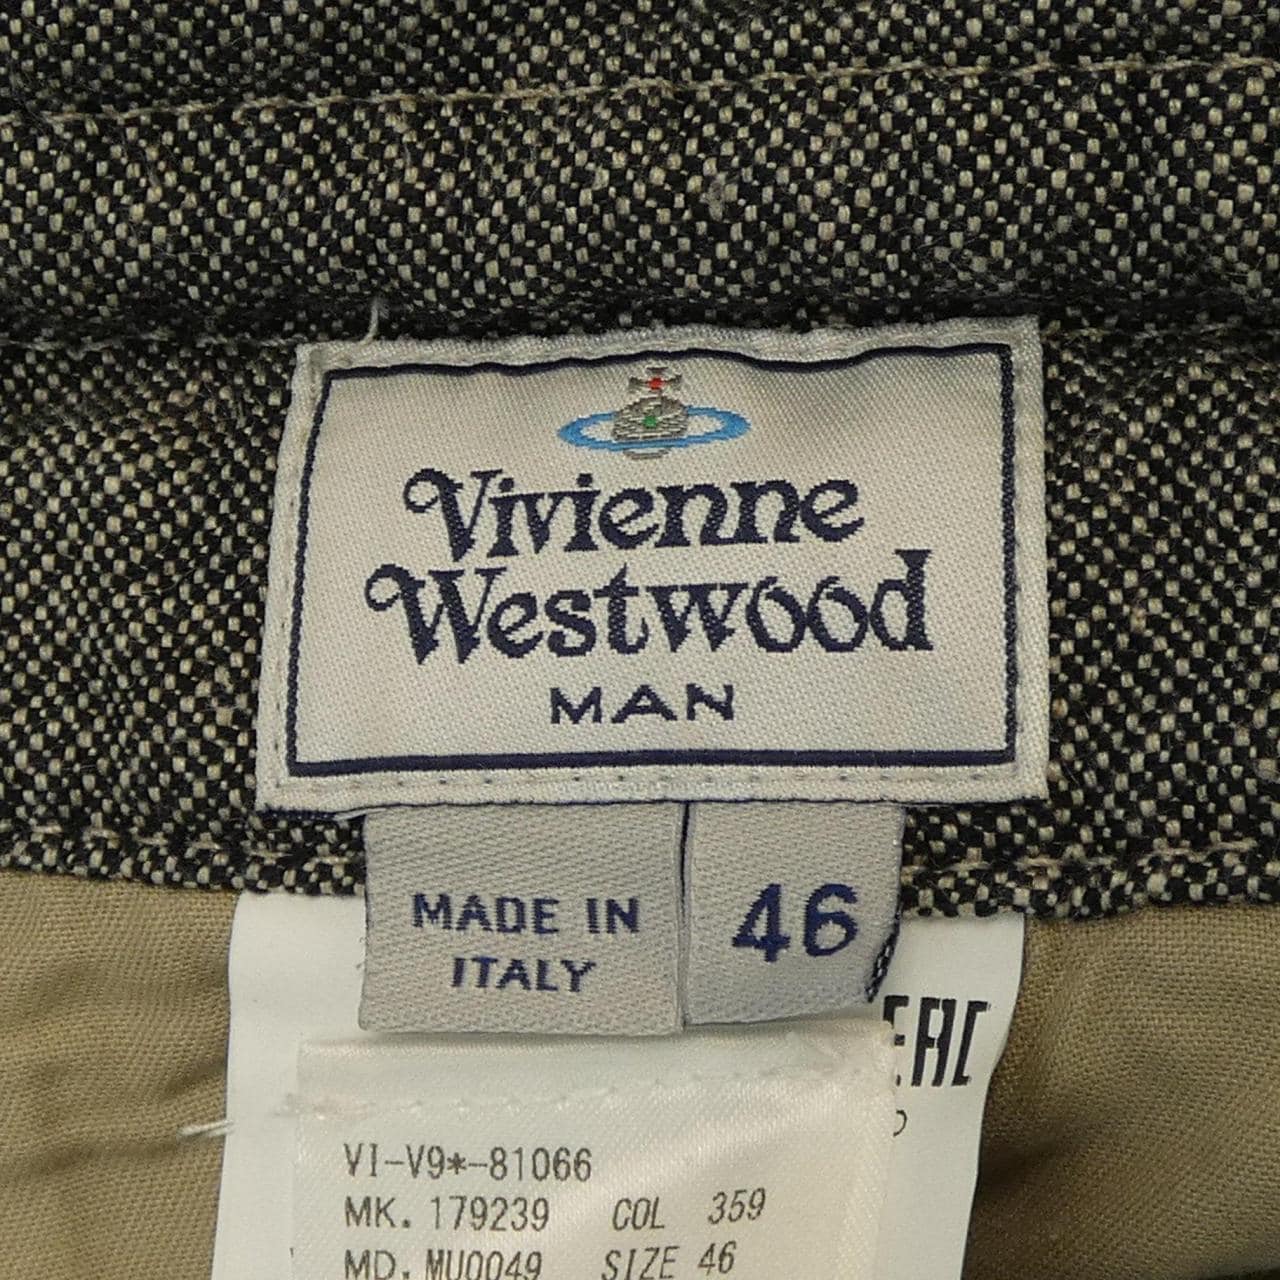 Vivienne Vivienne WestwoodMAN短褲